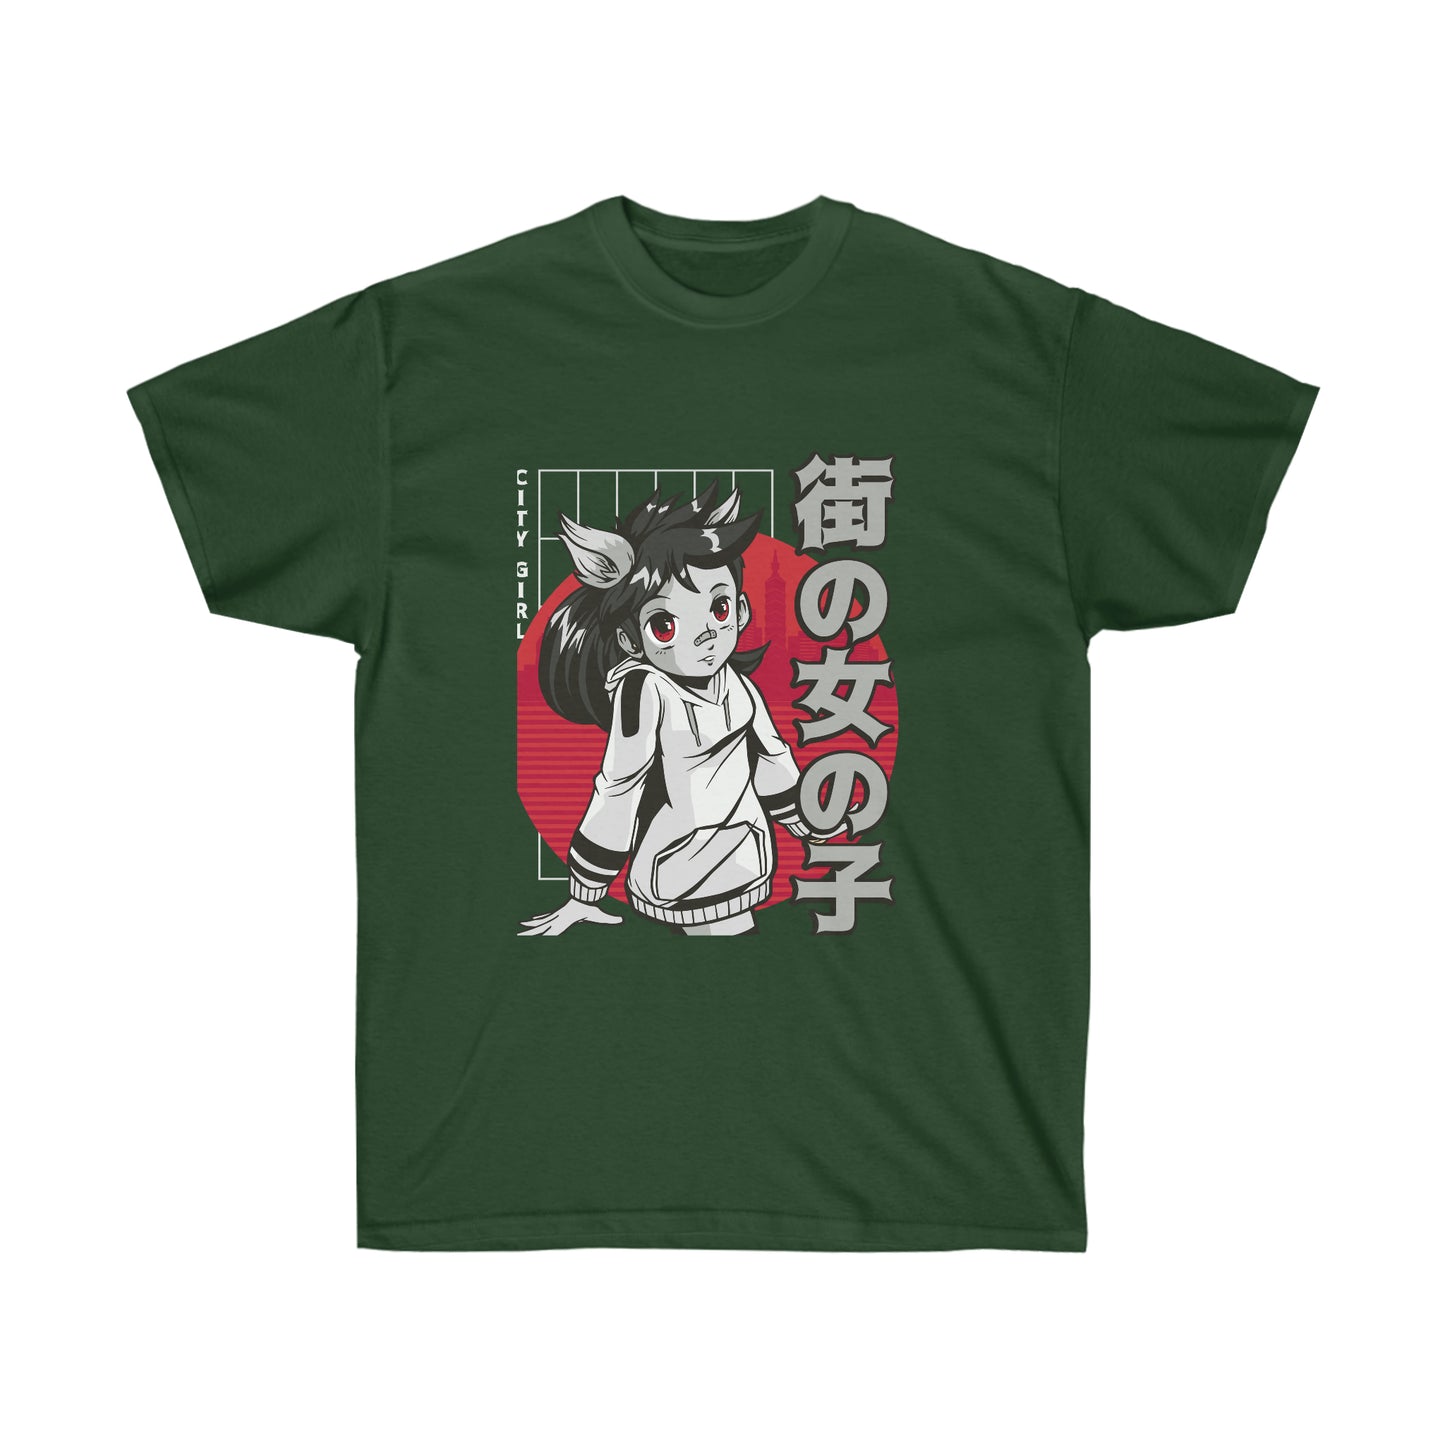 Japanese Aesthetic Anime City Girl Dark T-Shirt